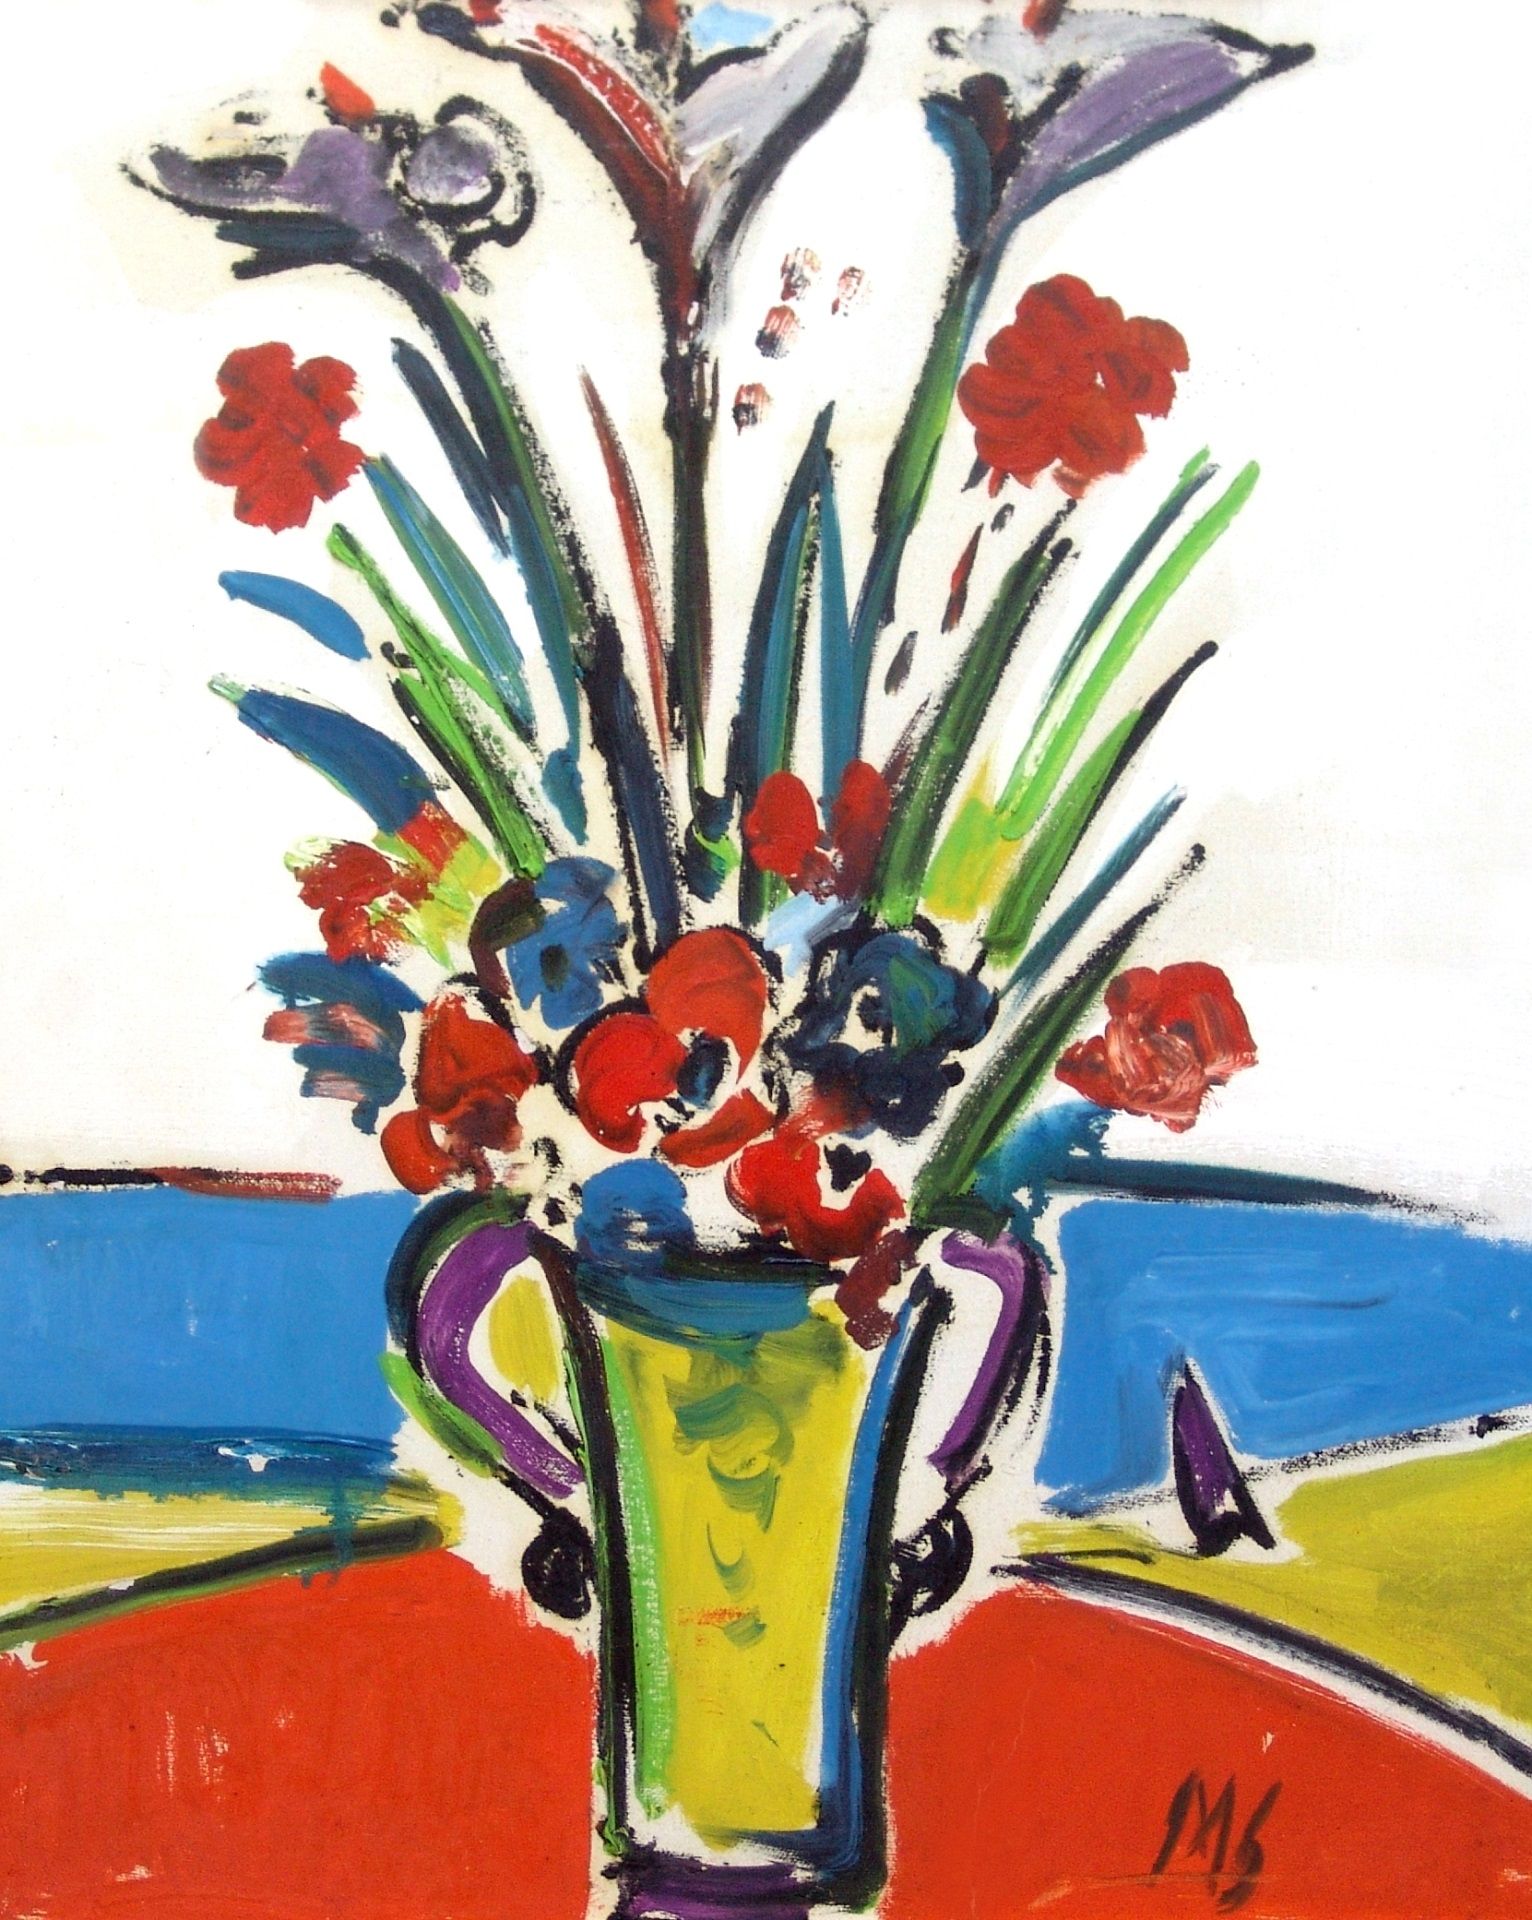 SANTE MONACHESI Fiori, 1968, olio su tela, 60x50 cm

firma dell’artista in basso&hellip;